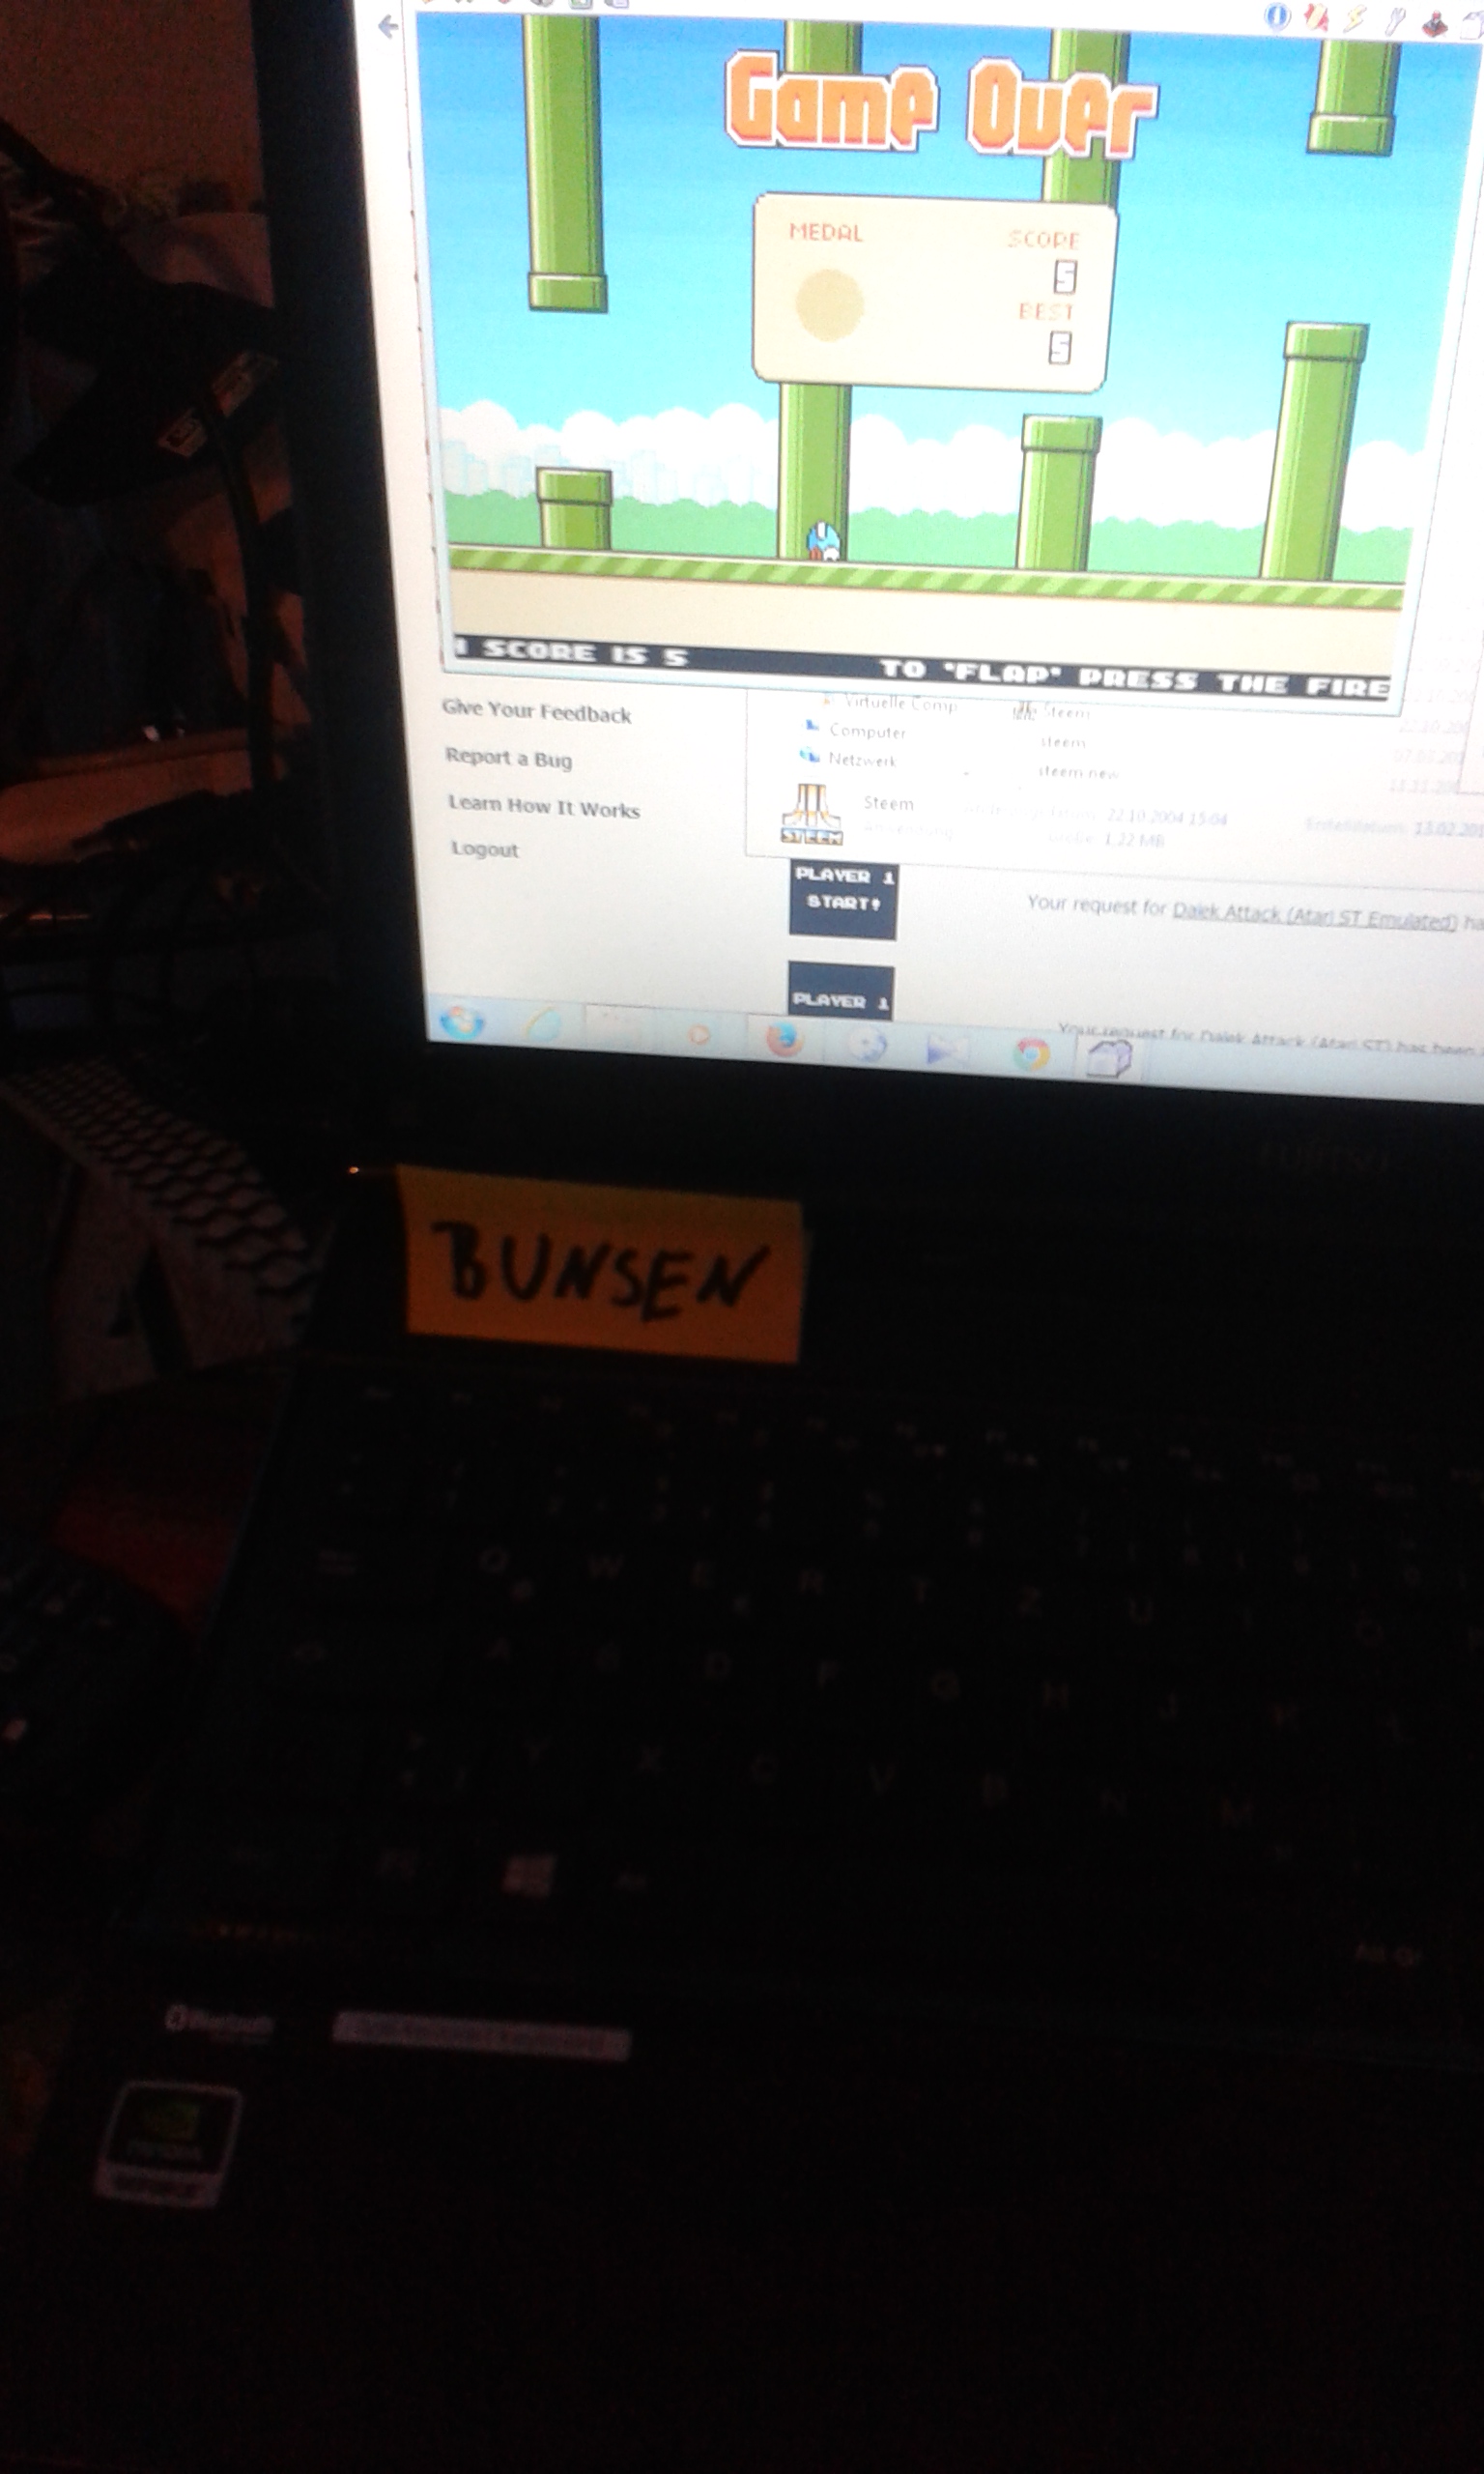 Bunsen: Flappy Bird (Atari ST Emulated) 5 points on 2015-03-08 10:24:19